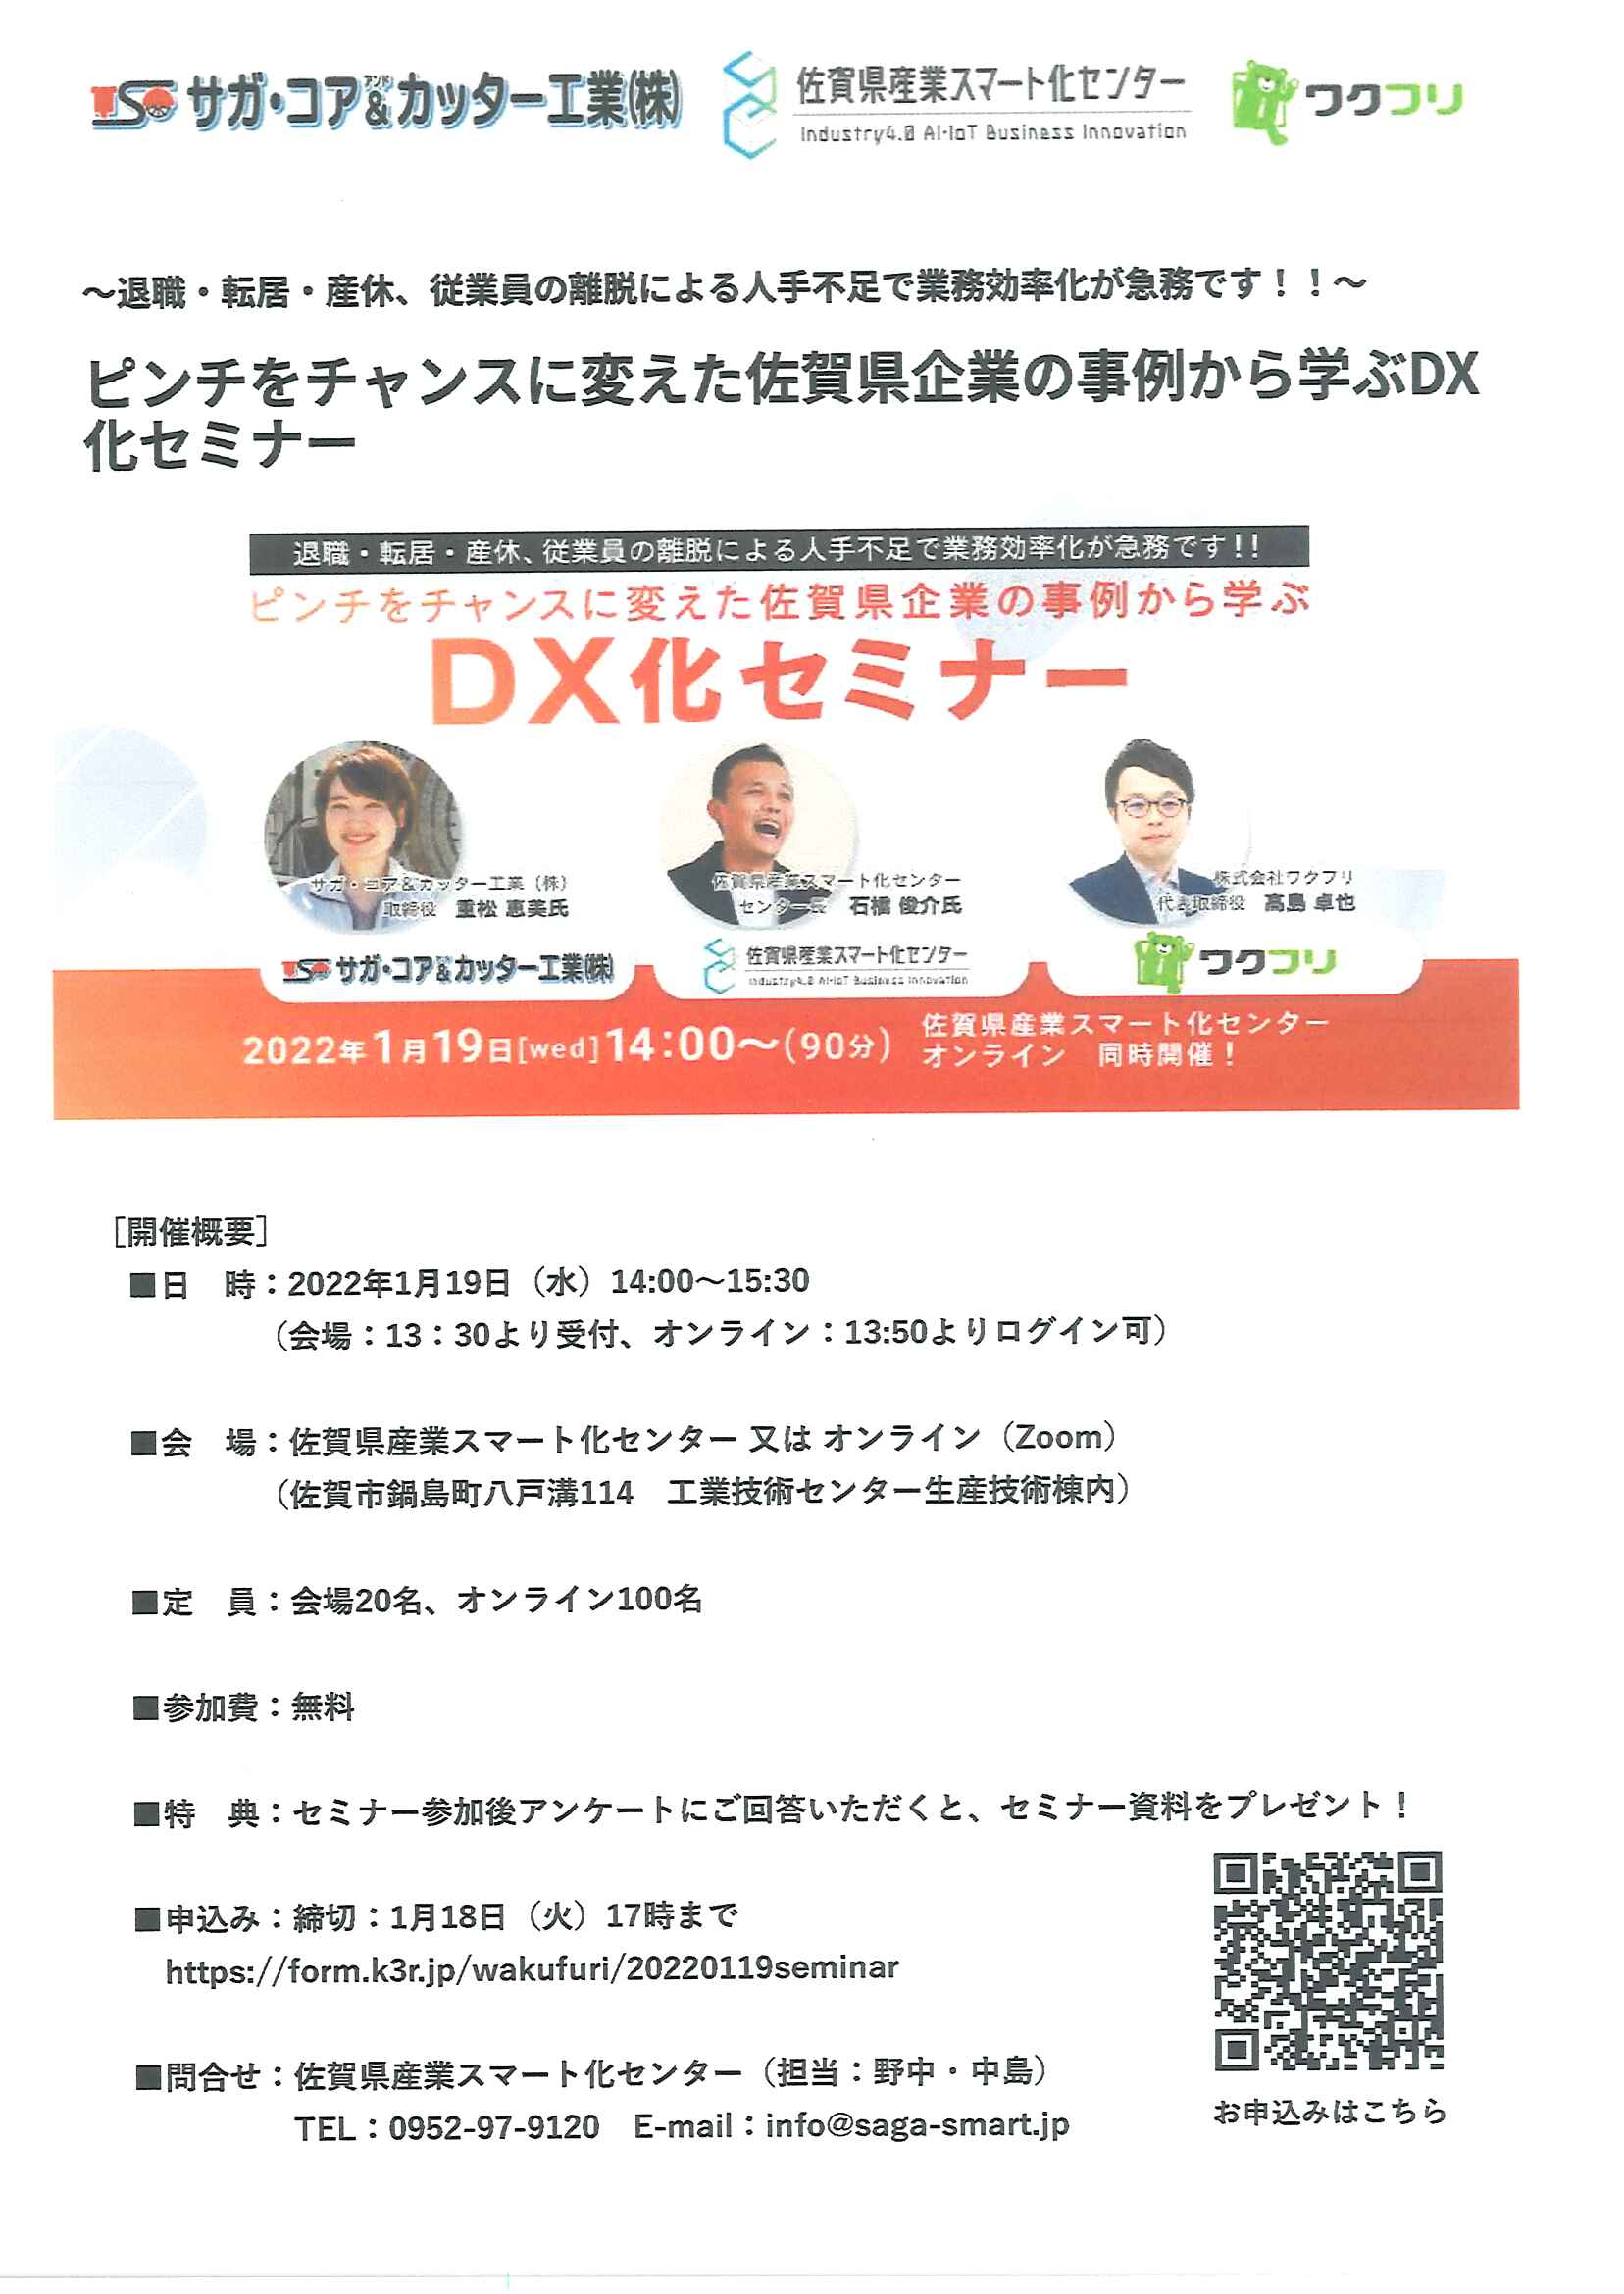 DX化セミナー　「ピンチをチャンスに変えた佐賀県企業の事例から学ぶ」